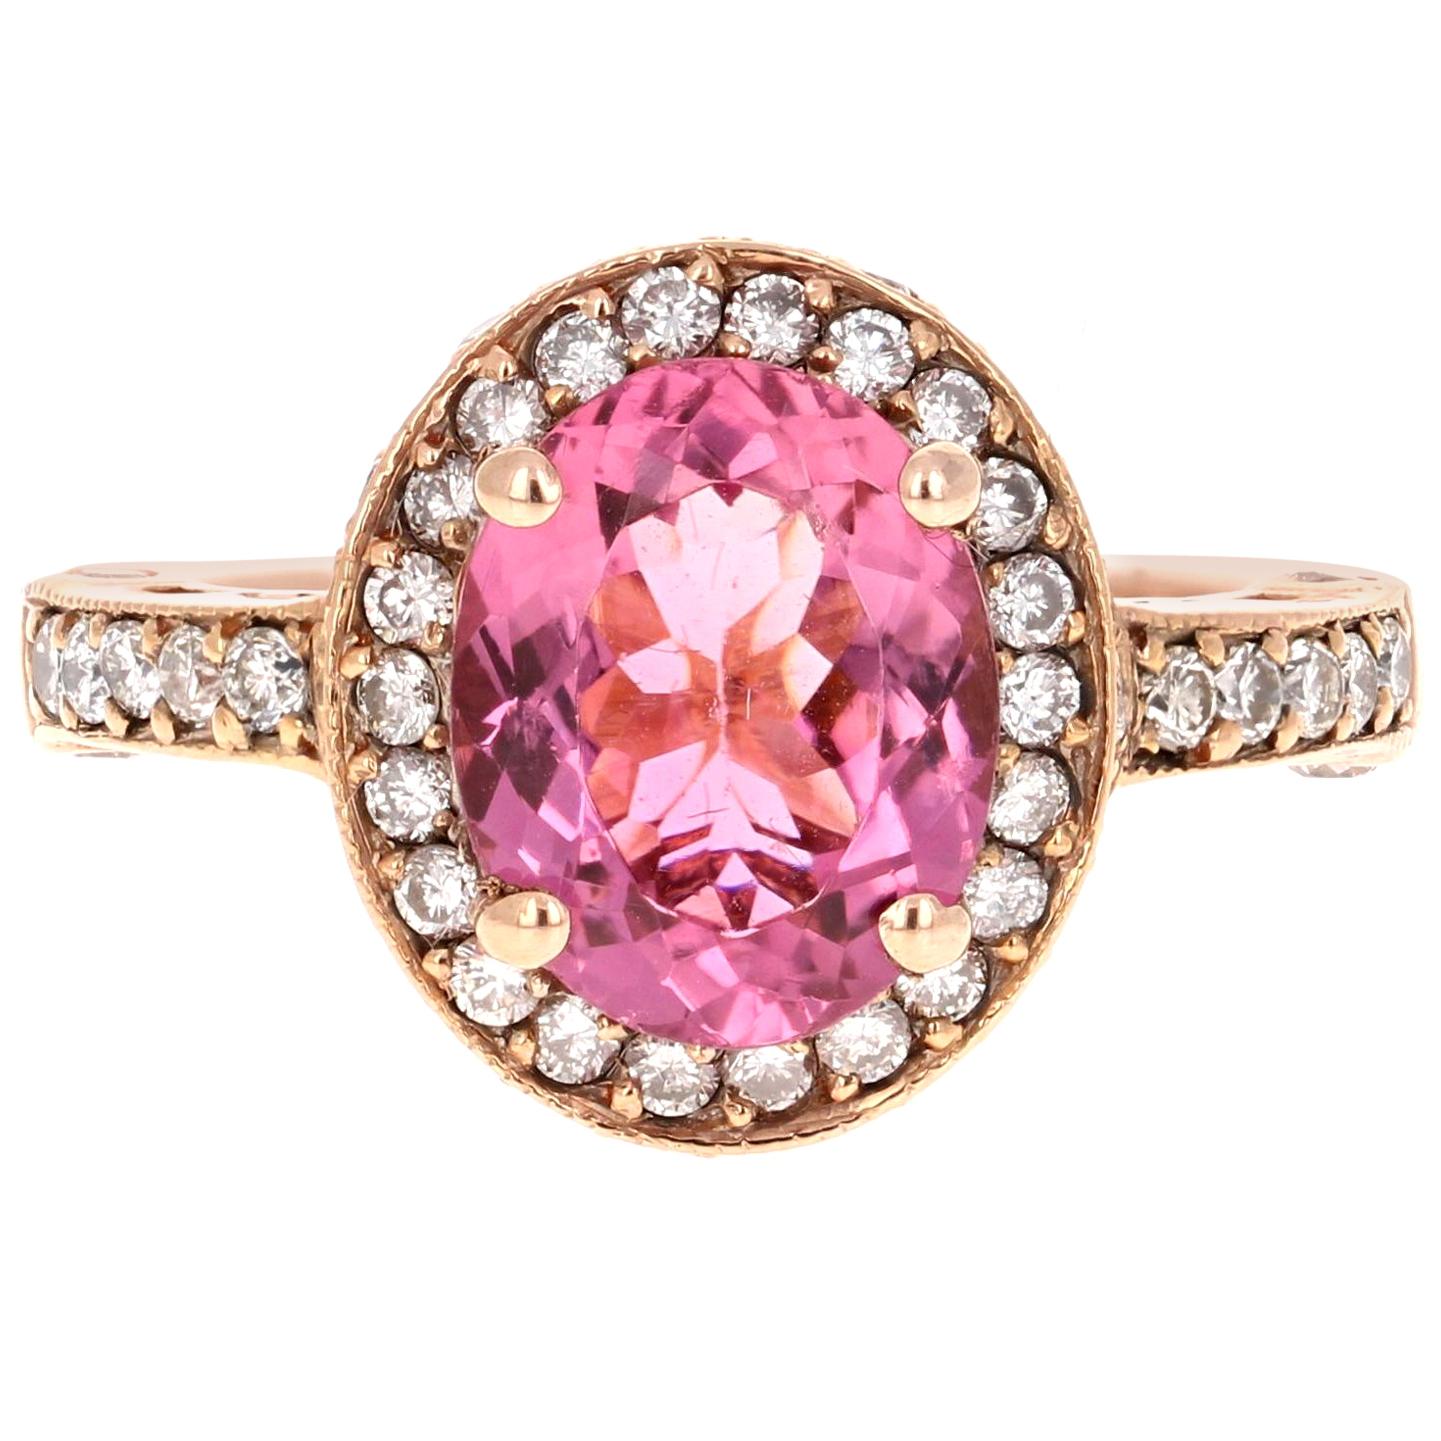 3.29 Carat Pink Tourmaline Diamond Rose Gold Ring